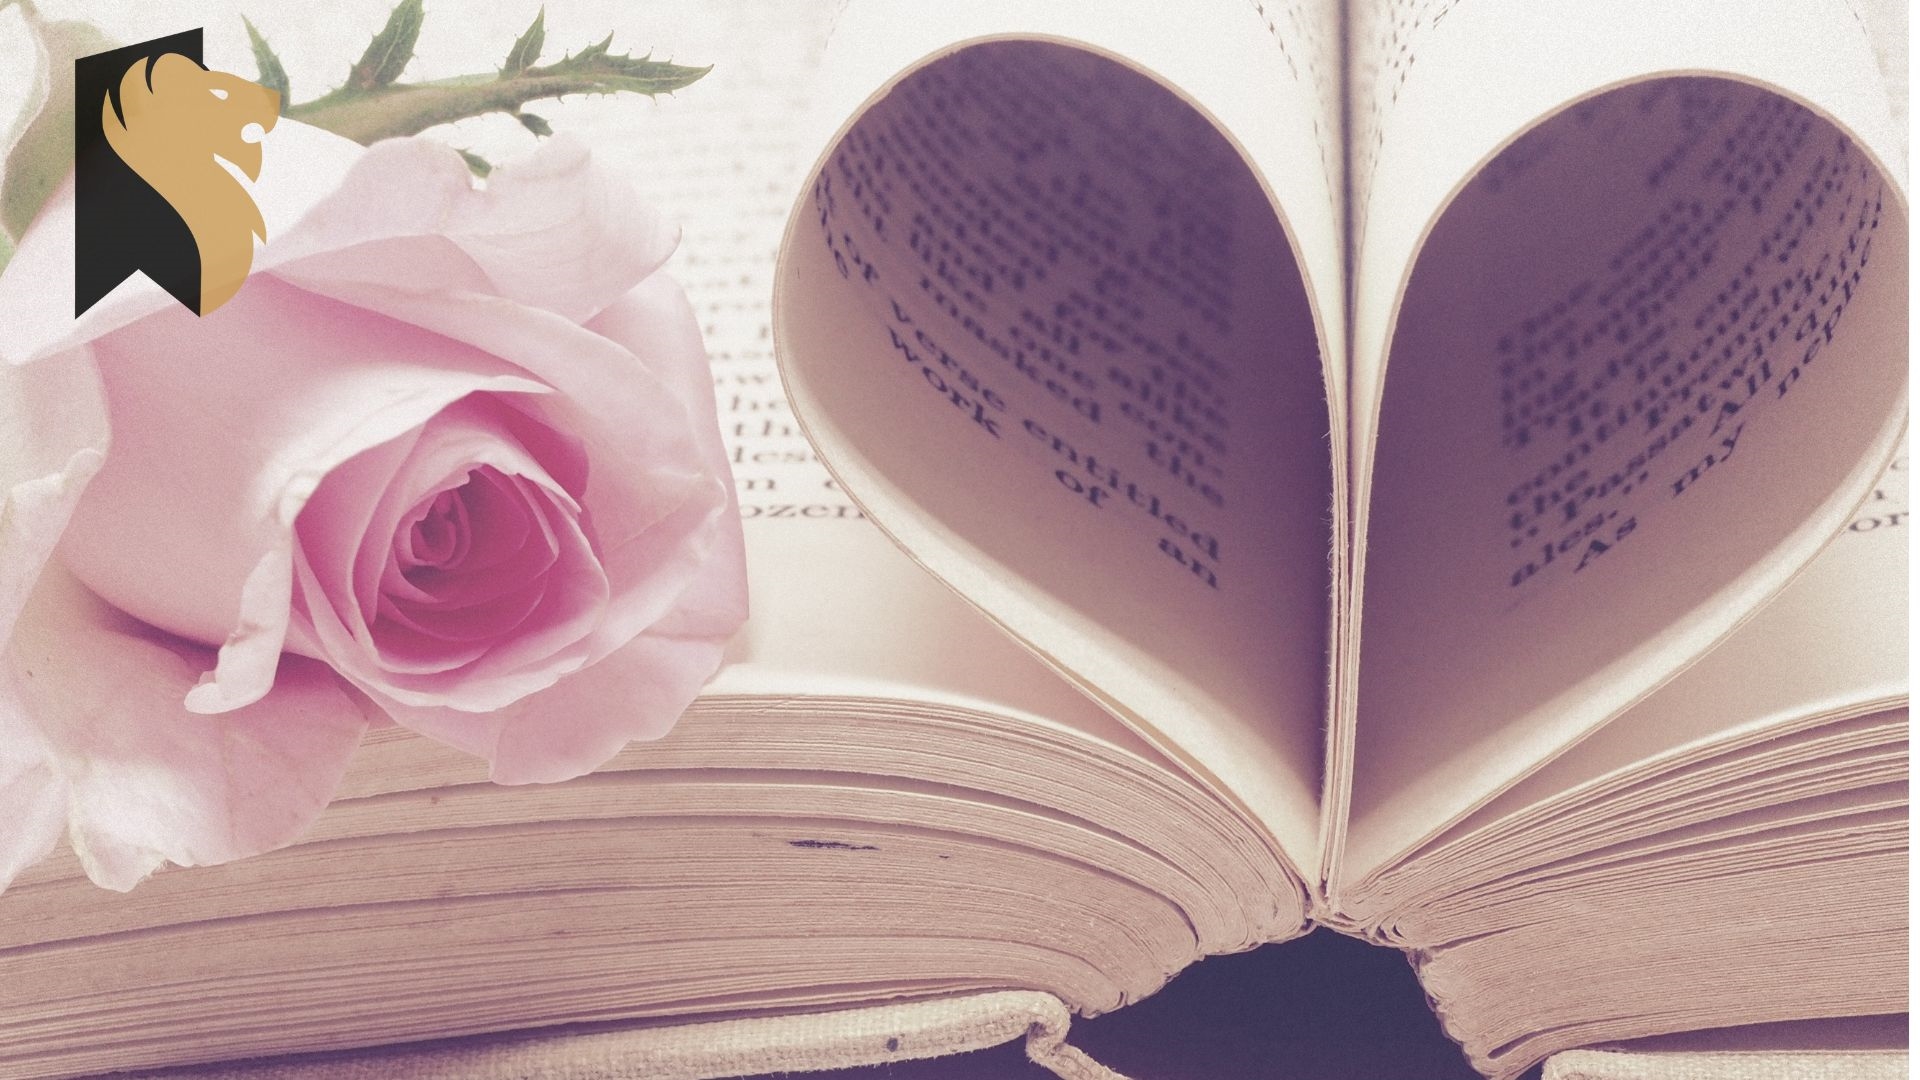 Otwarta książka. Z kartek na środku zrobione serce. Z lewej strony róża.